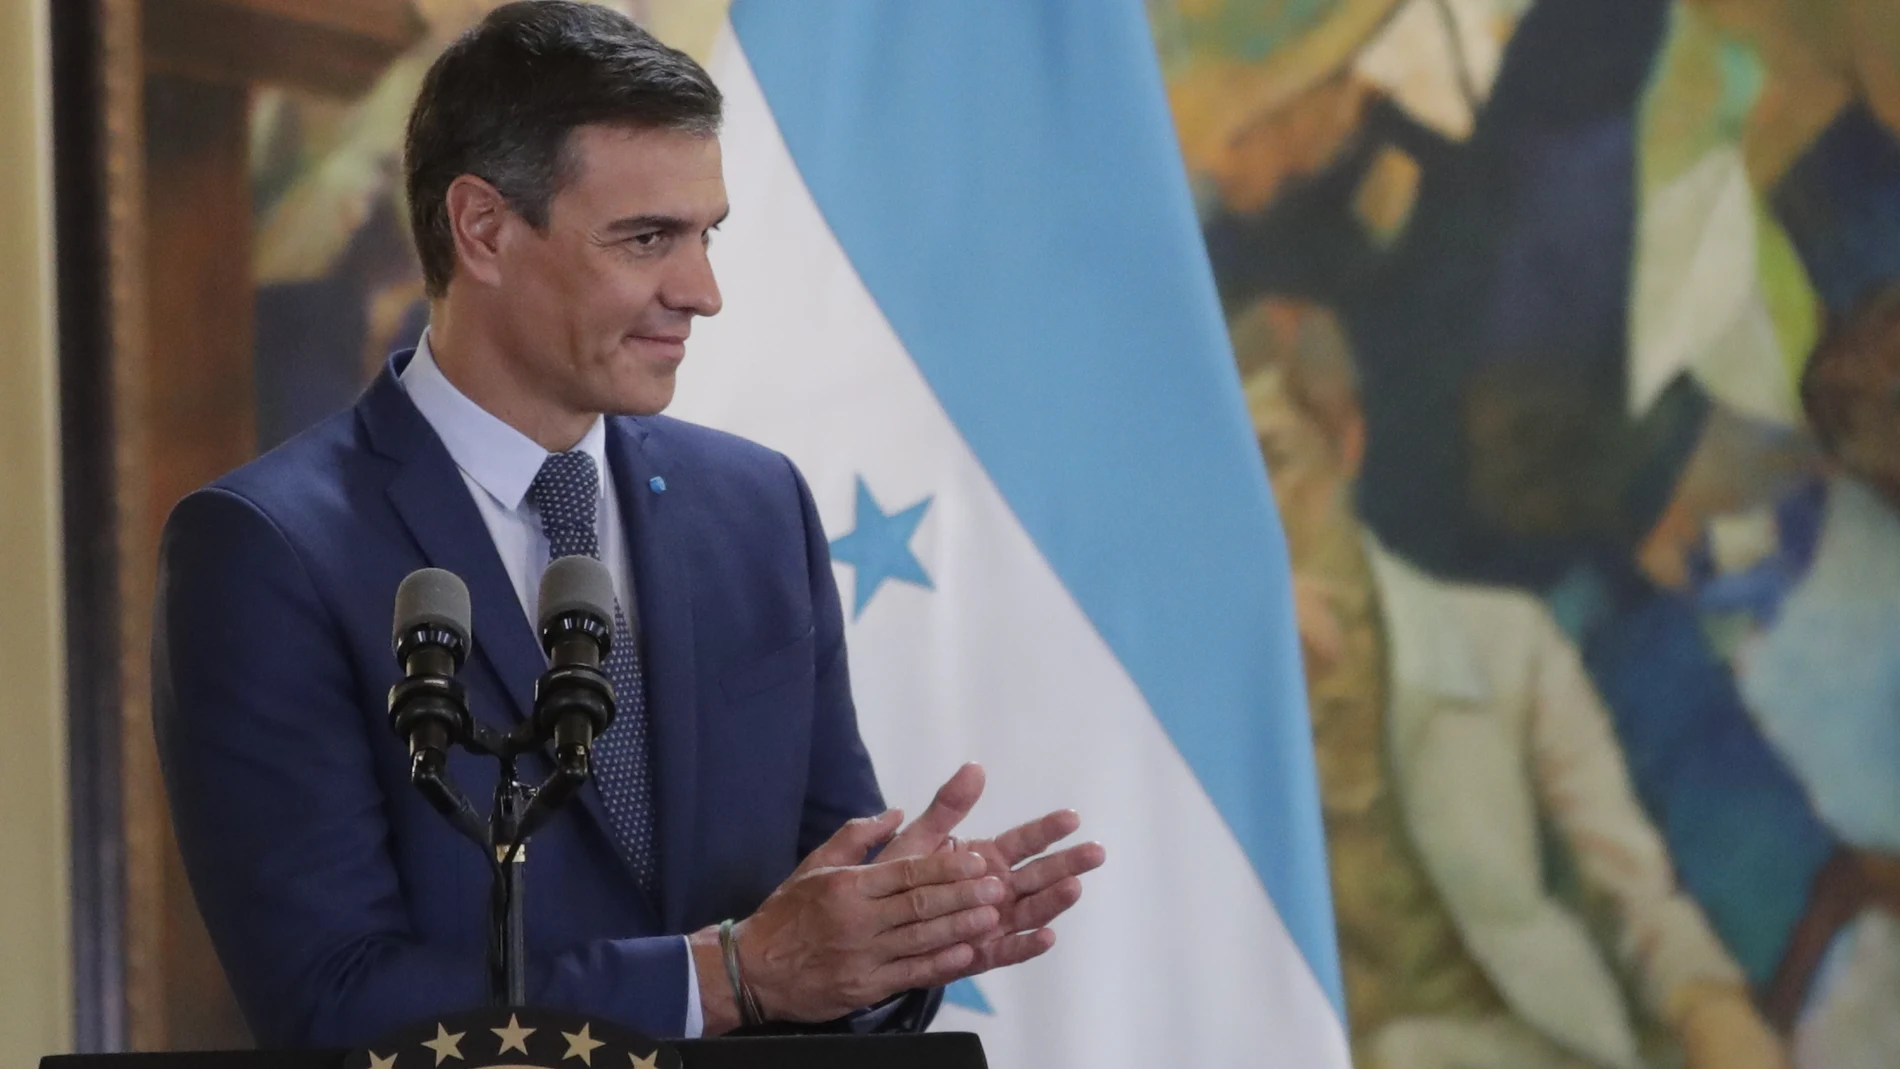 El presidente del Gobierno, Pedro Sánchez, aplaude durante unas declaraciones a la prensa en Tegucigalpa